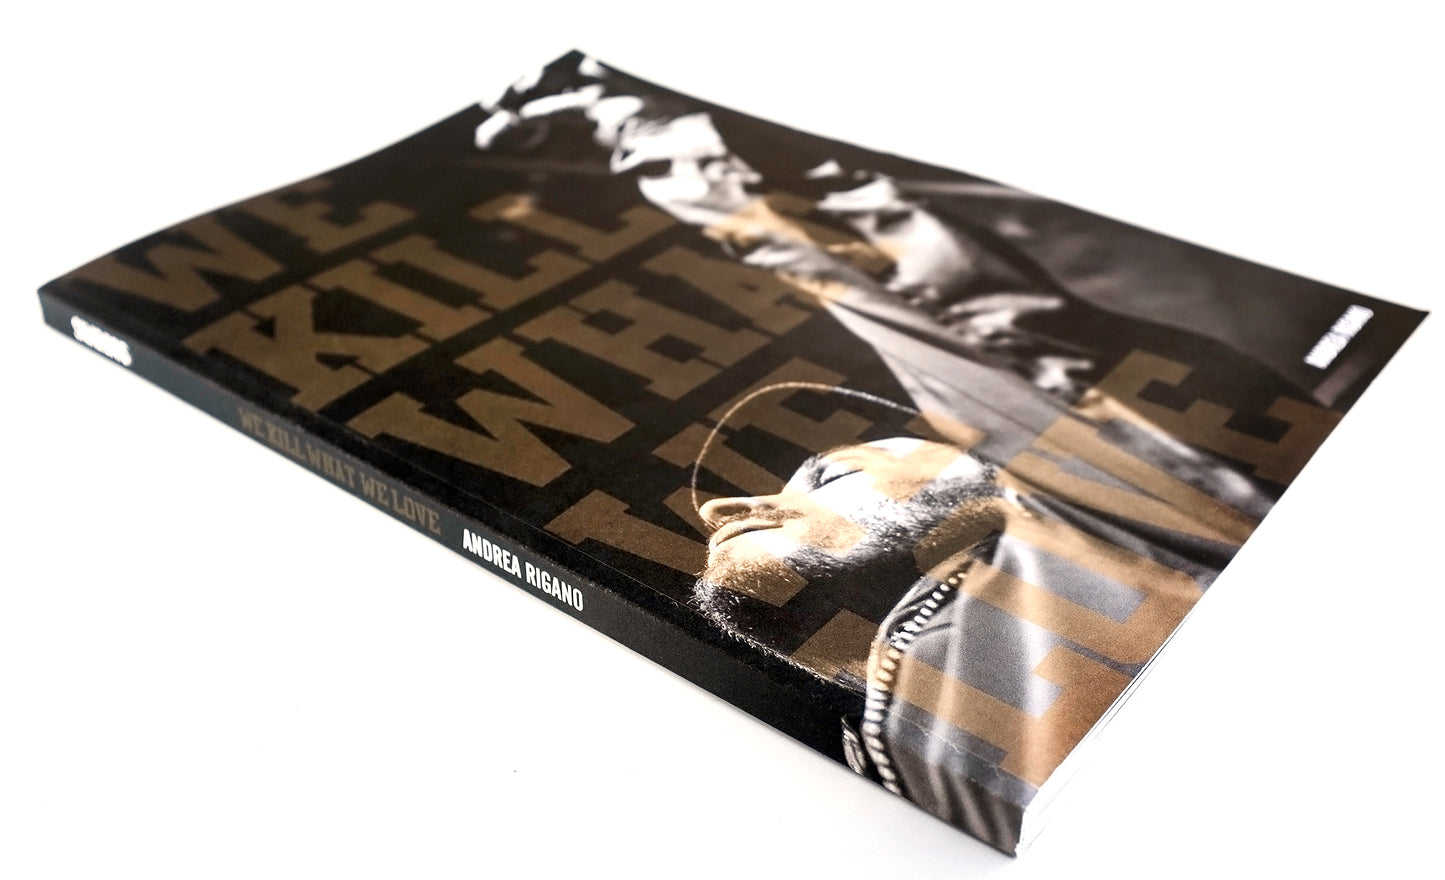 "5OM x WKWWL" black hoodie + book